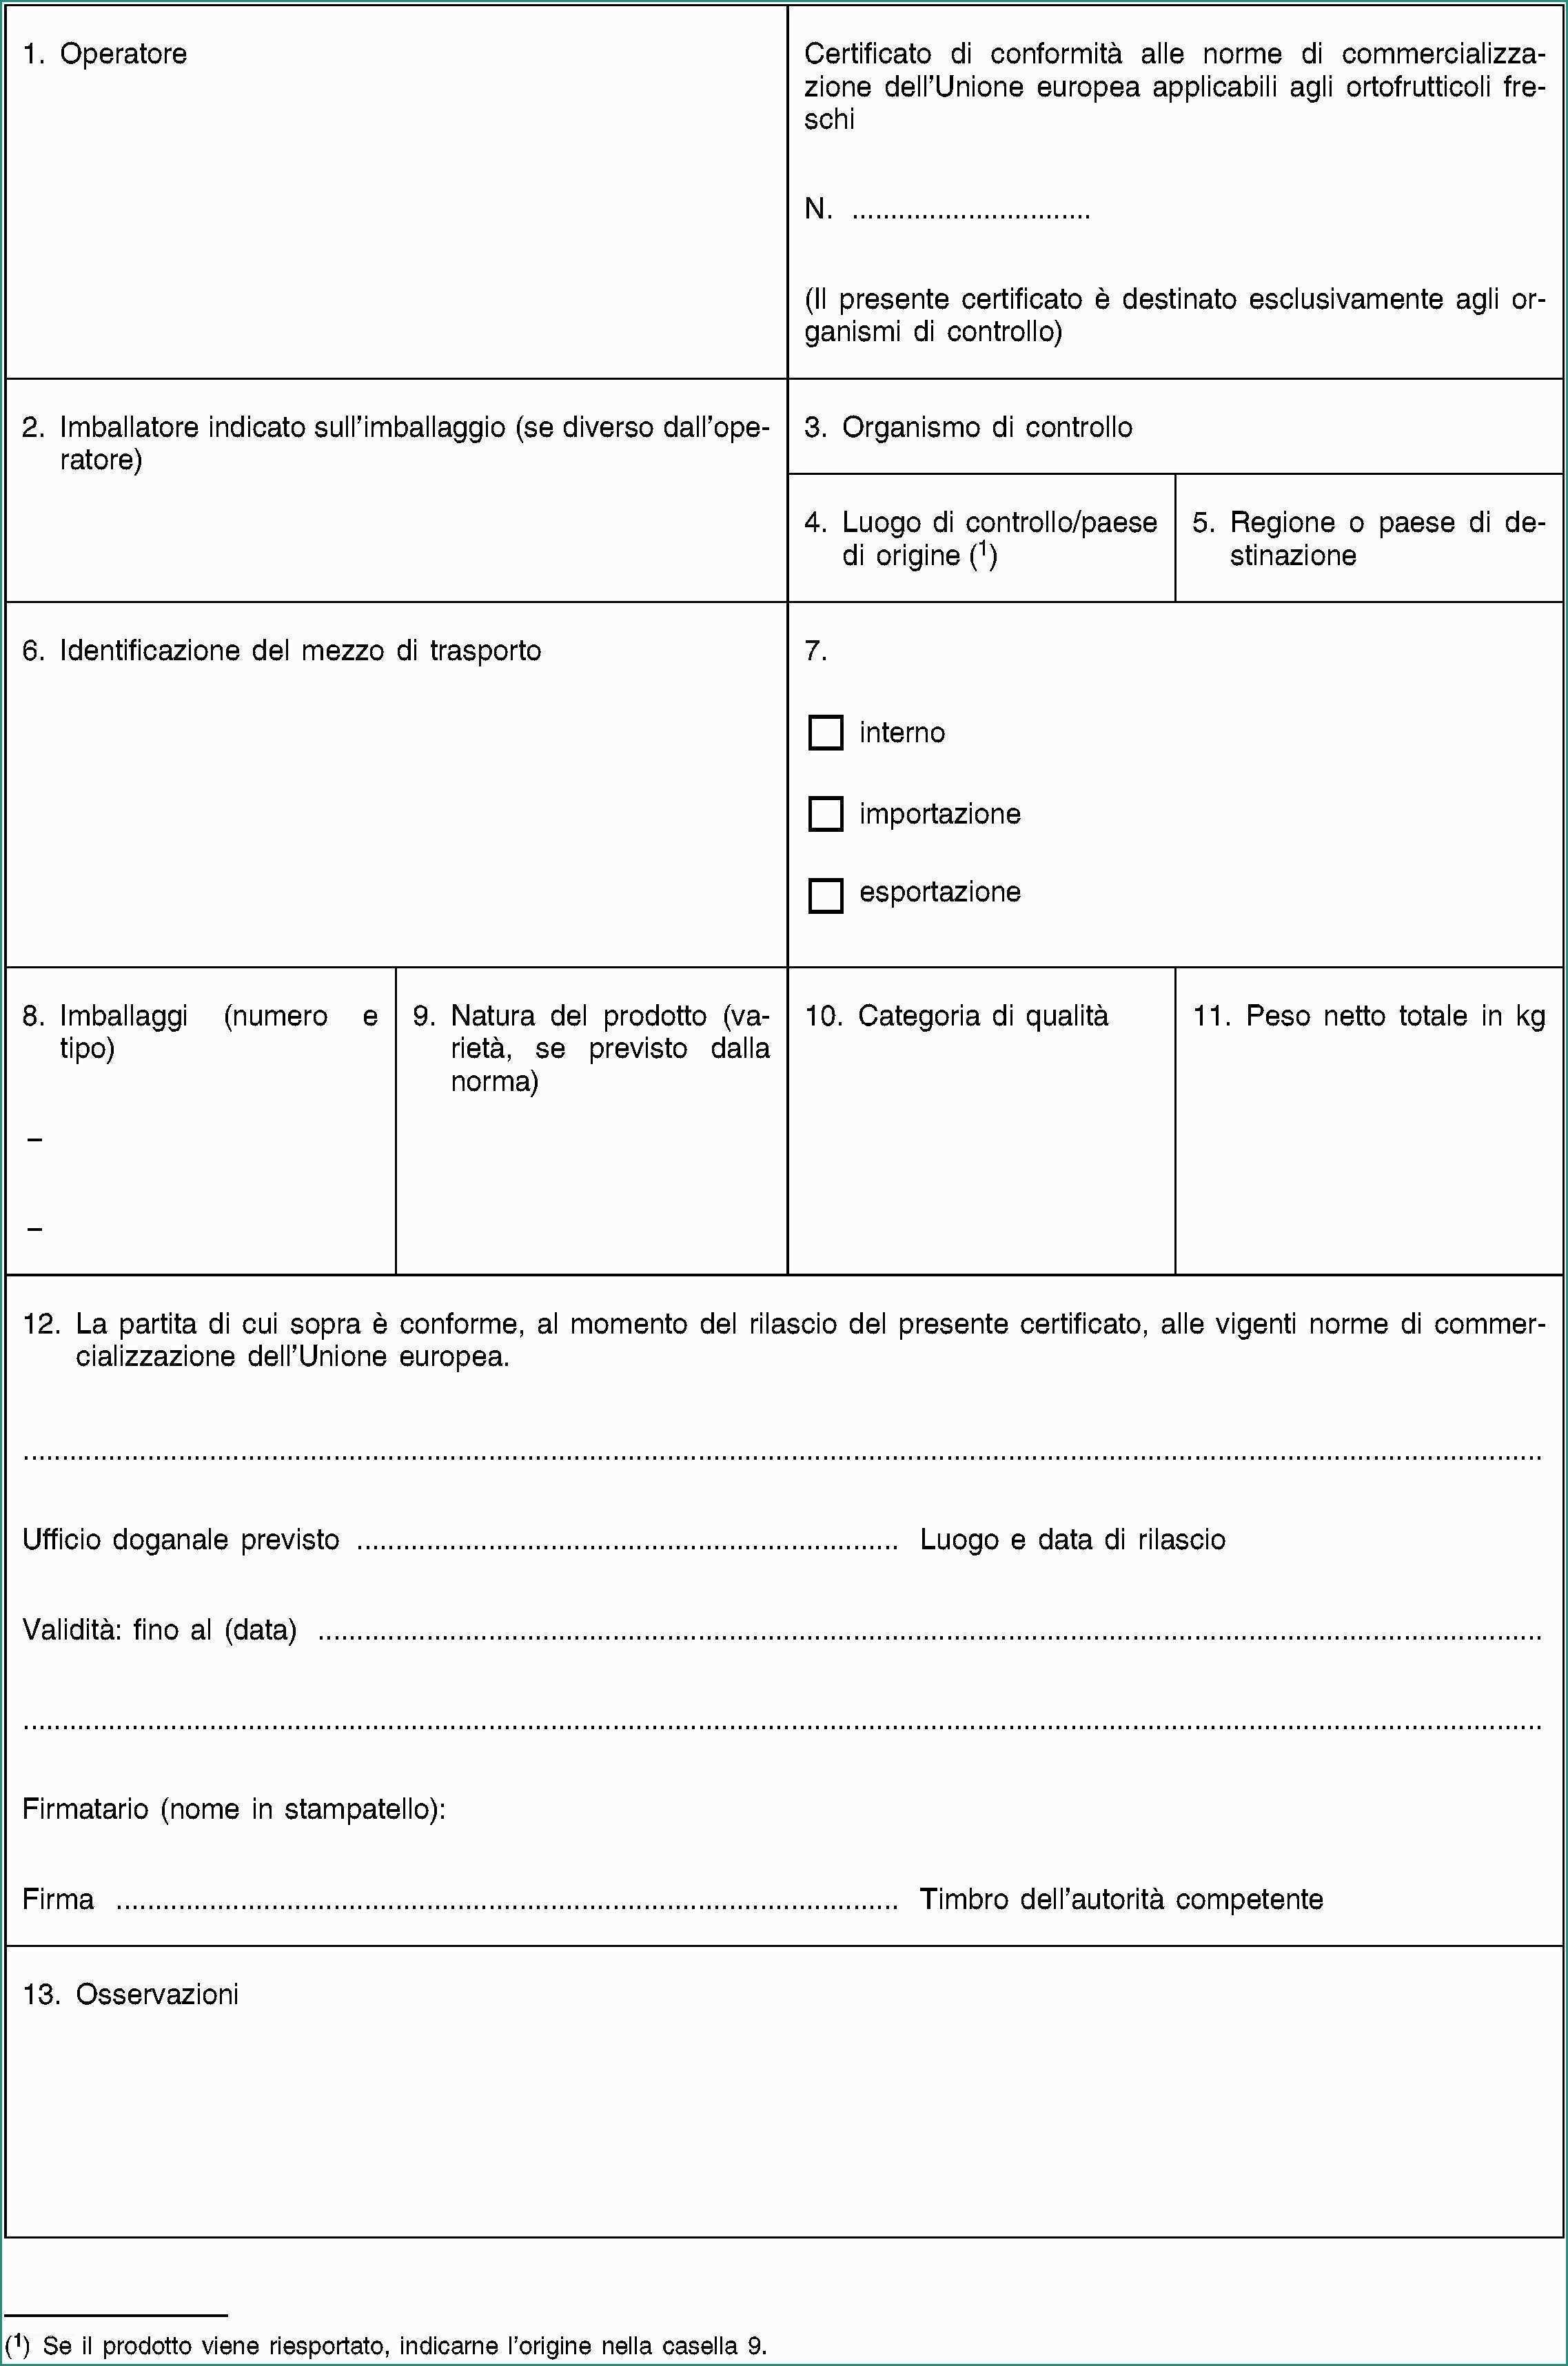 Mutui Poste Italiane Calcola Rata E Eur Lex R0543 En Eur Lex